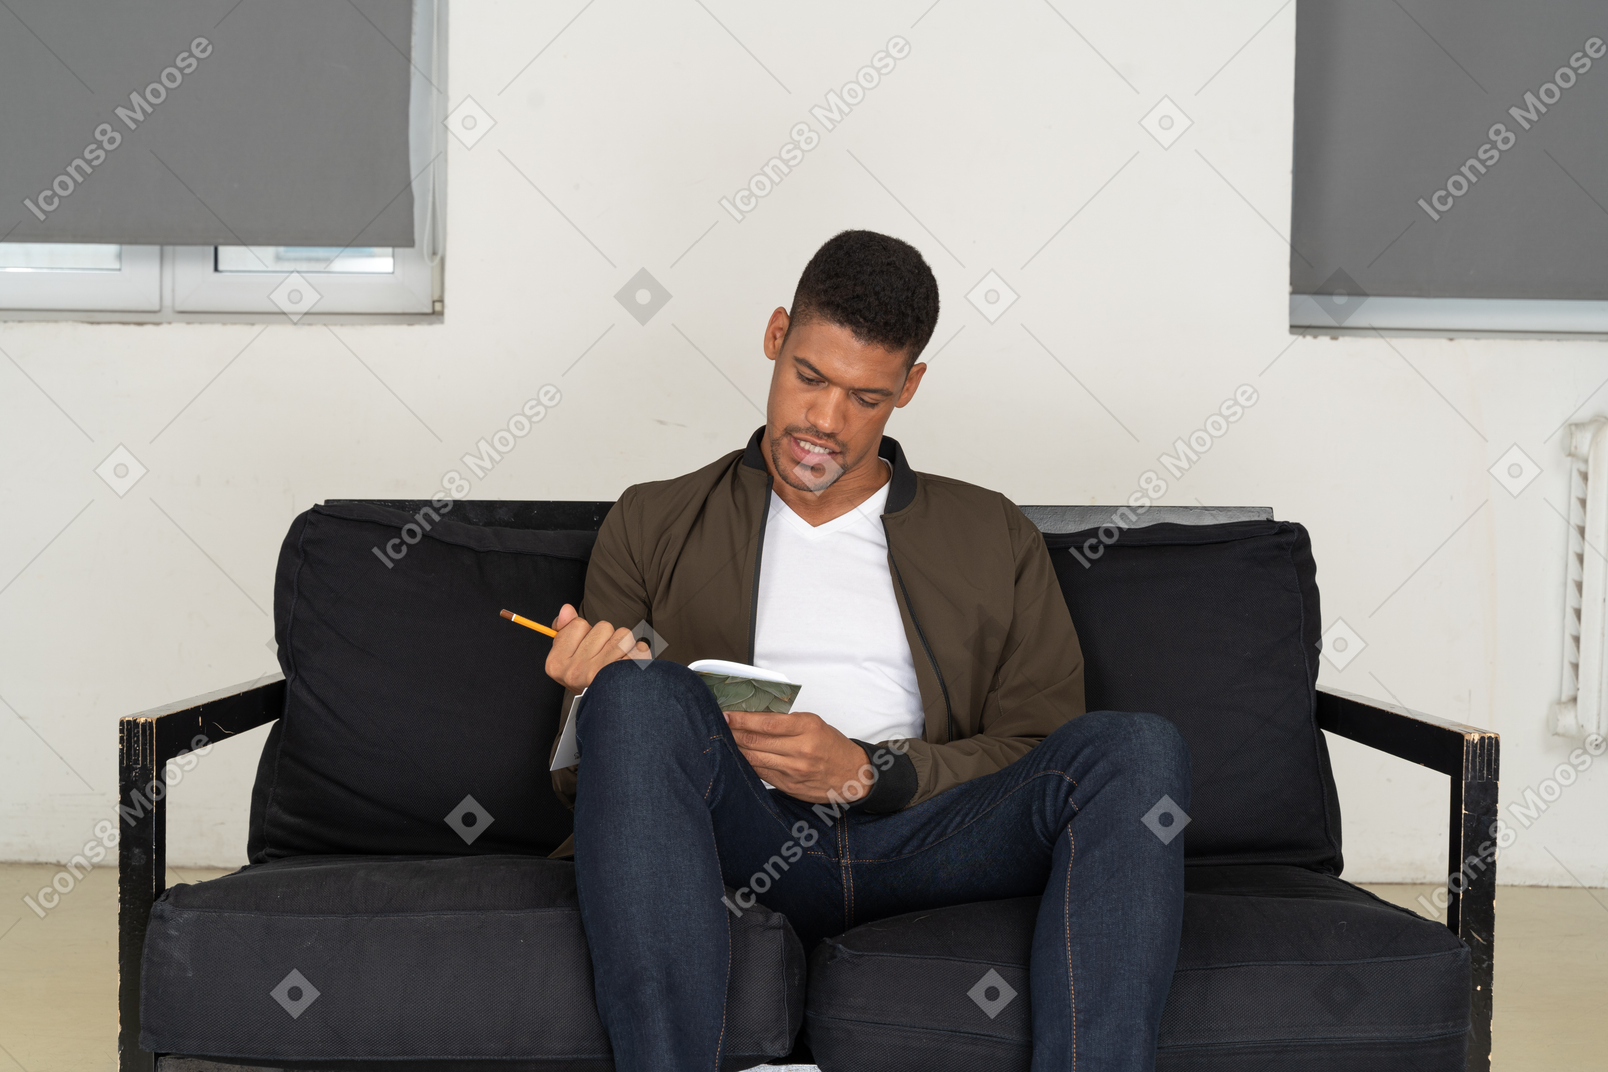 Vista frontal del joven sentado en un sofá y tomando notas